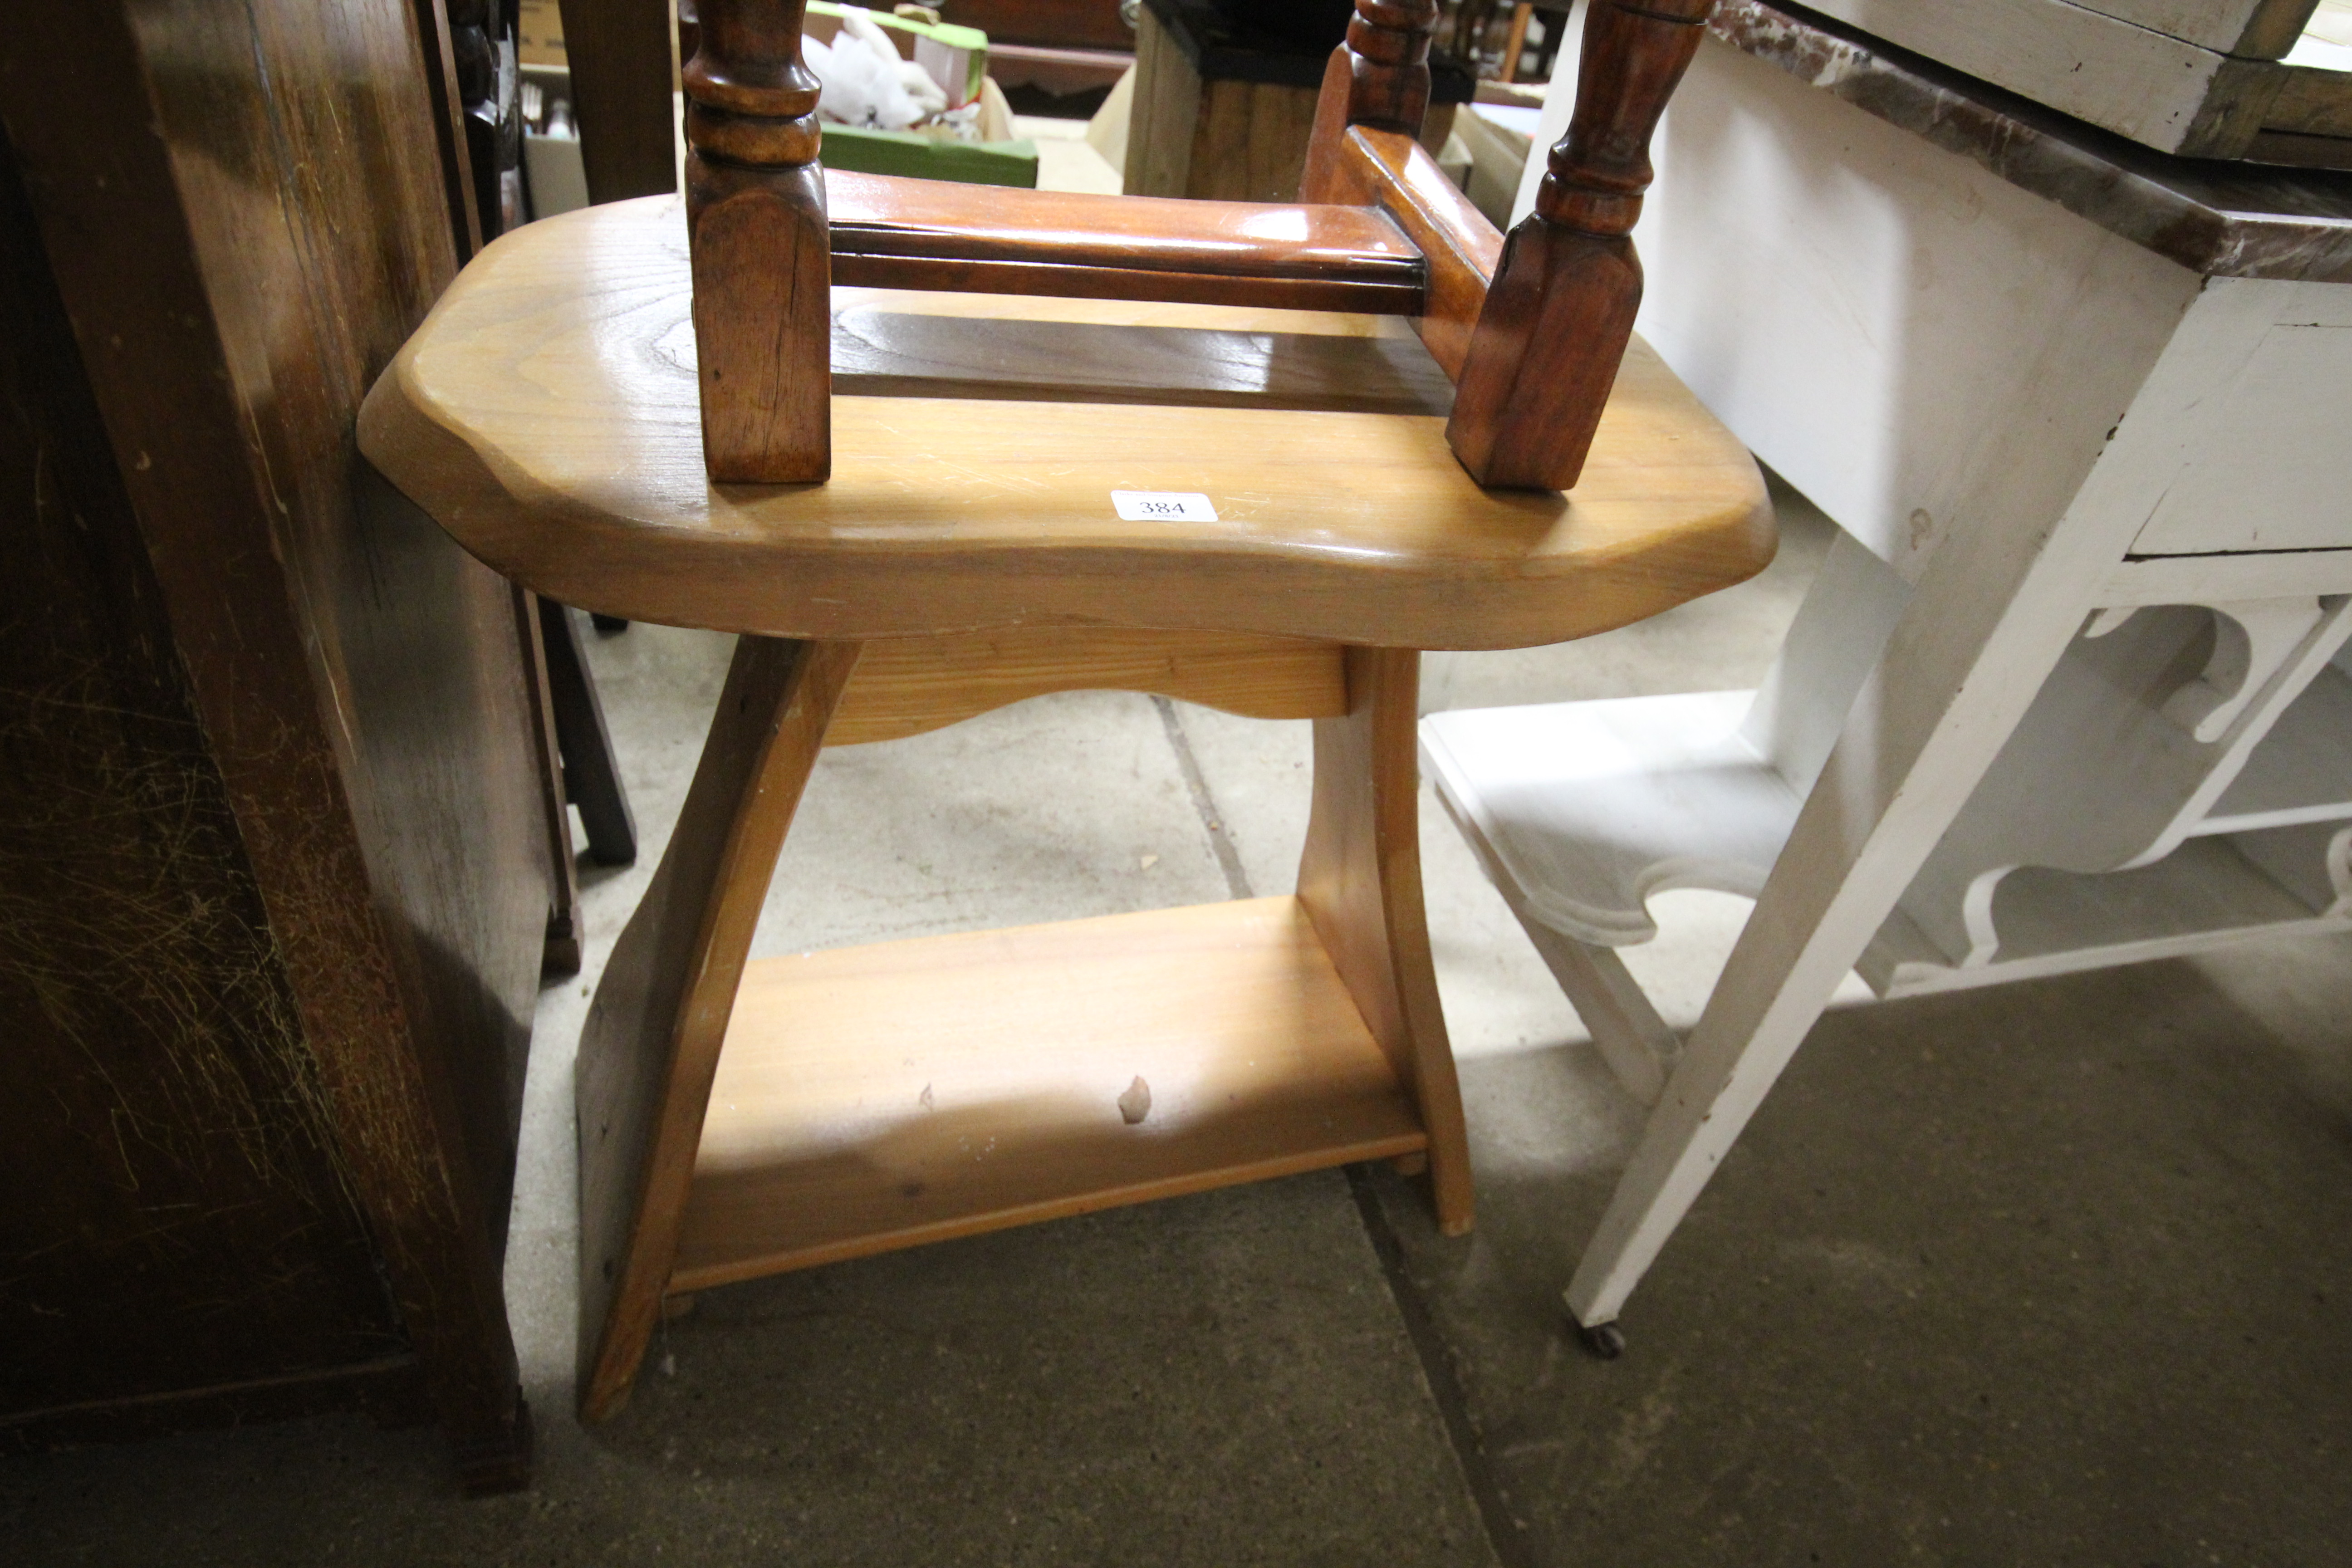 An oak two tier rustic side table